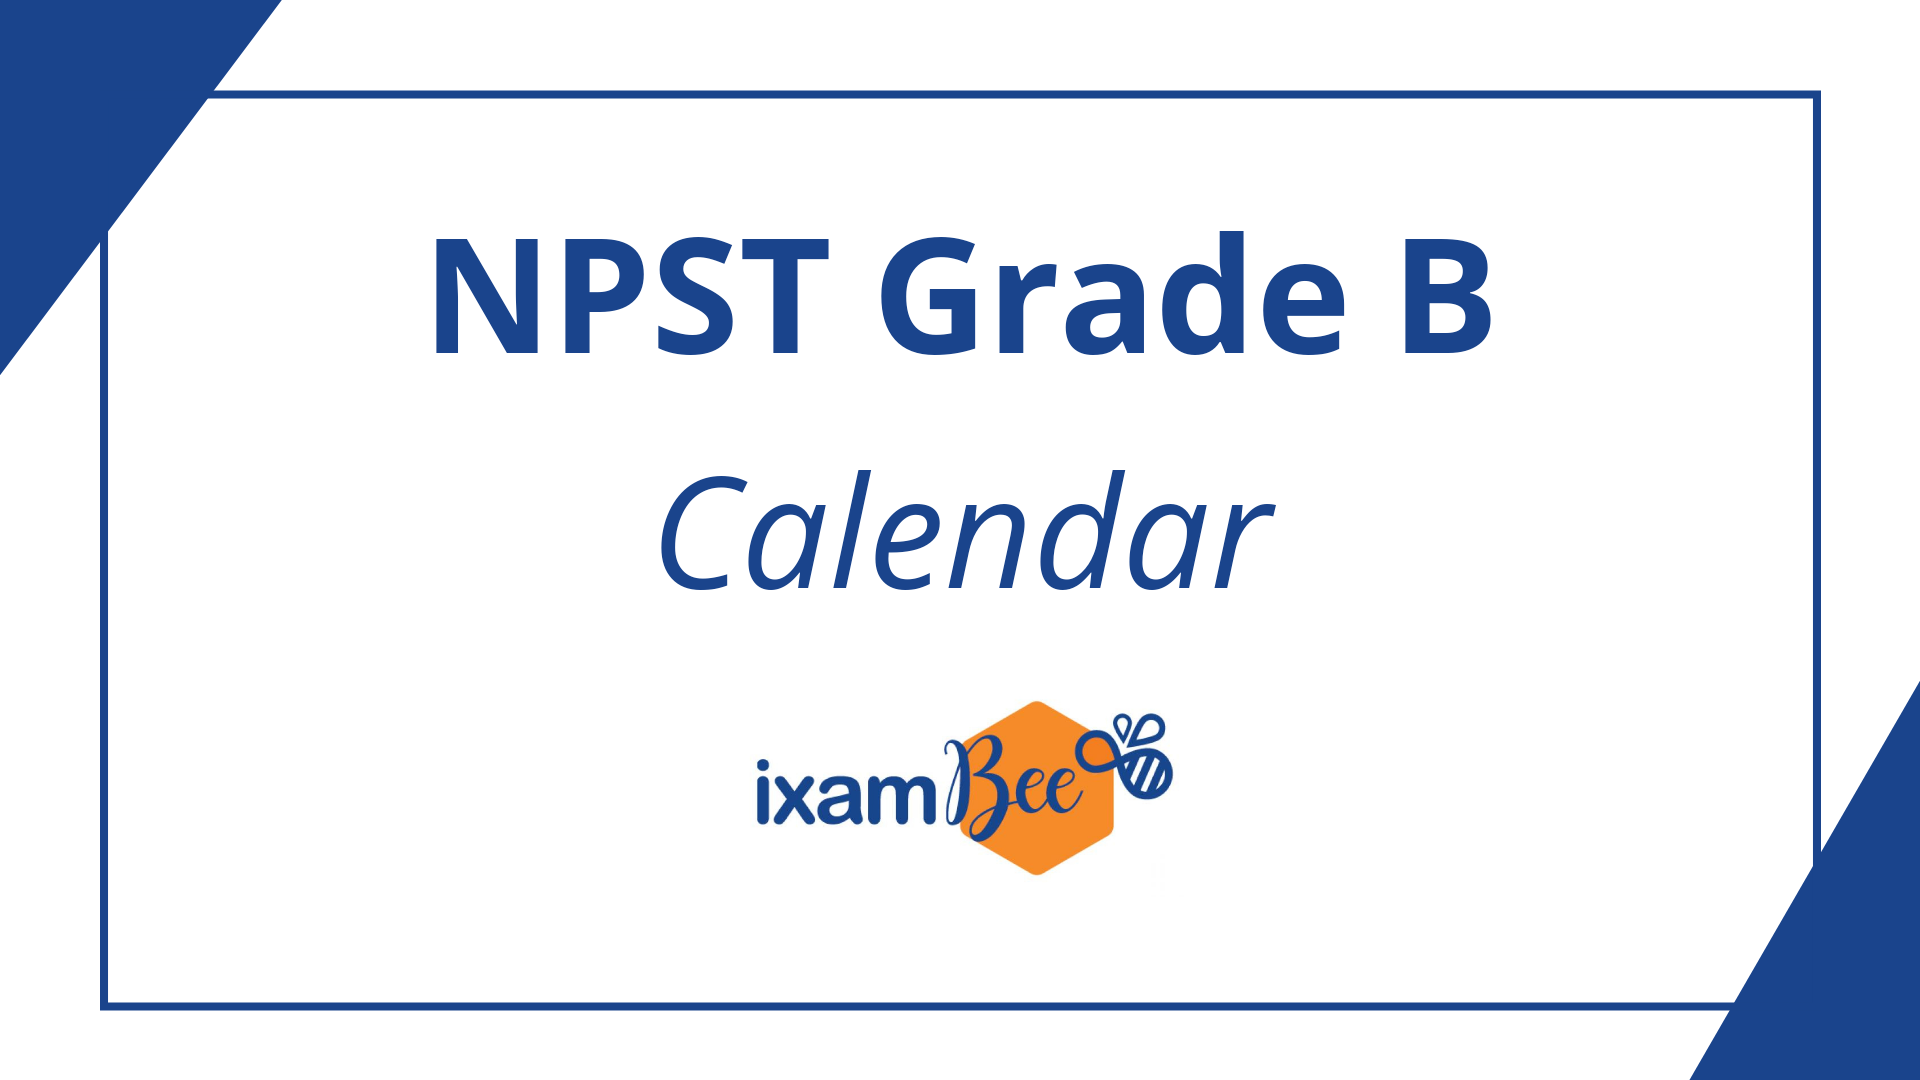 NPS Trust Officer Grade B Exam Dates 2021